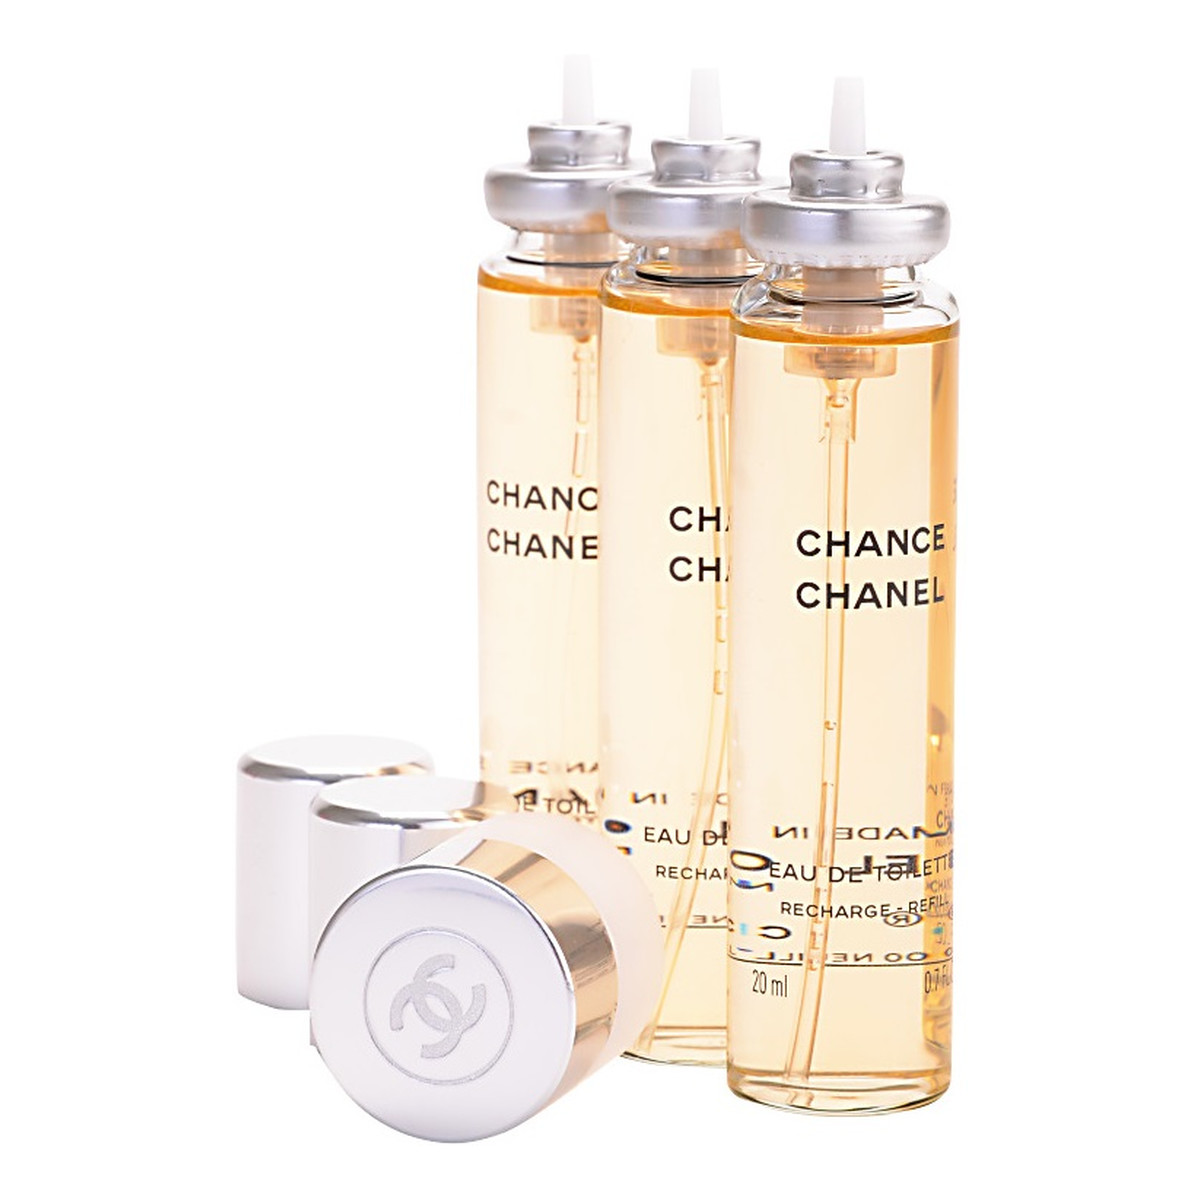 Chanel Chance woda toaletowa dla kobiet 3x20ml 20ml